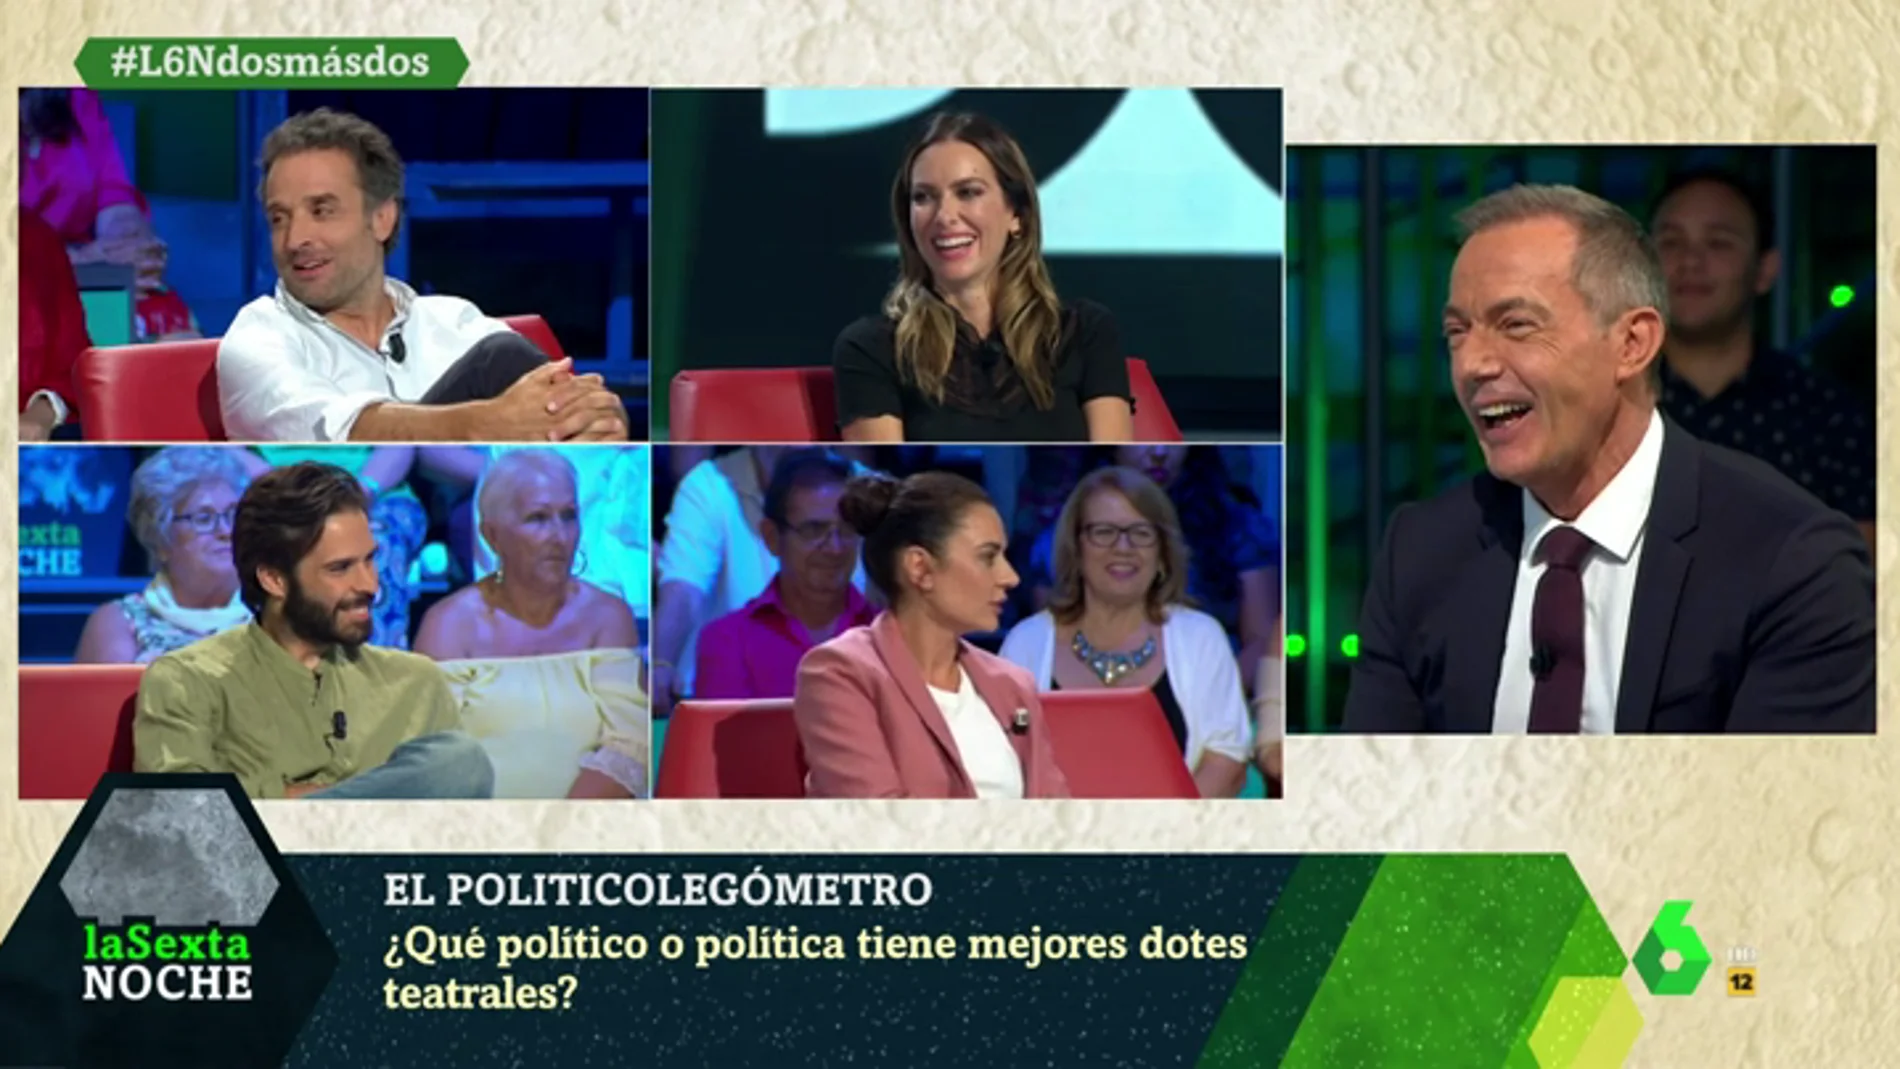 El 'politicolegómetro' de Kira Miró, Daniel Guzmán, Alex Barahona y Miren Ibarguren: ¿con qué políticos se irían de cañas o tendrían un 'match'?